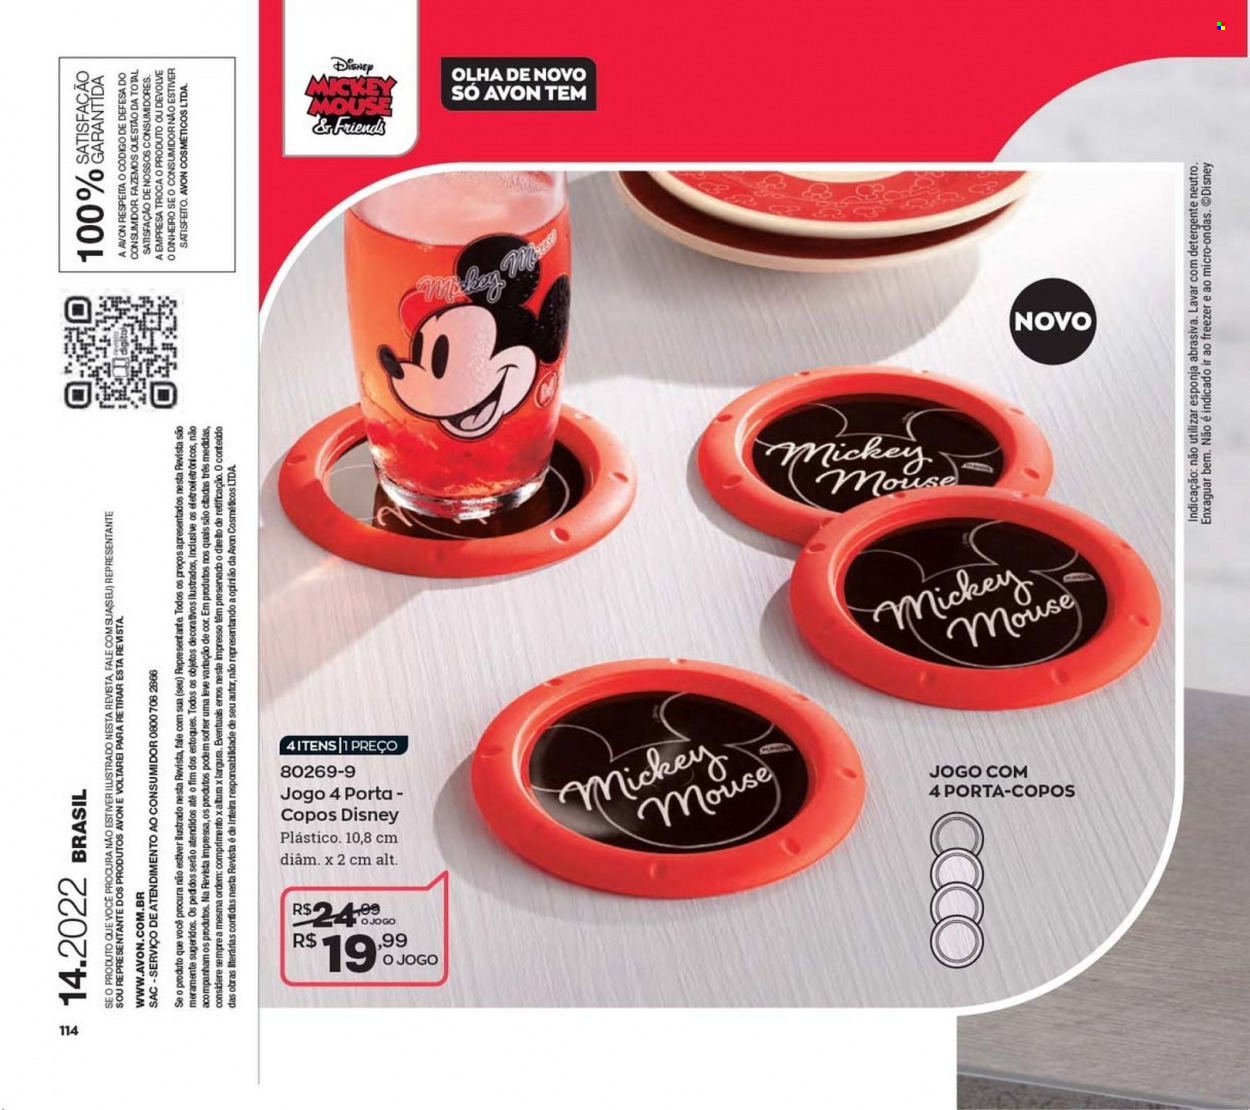 thumbnail - Folheto Avon - Produtos em promoção - Disney, detergente, Avon, esponja. Página 114.